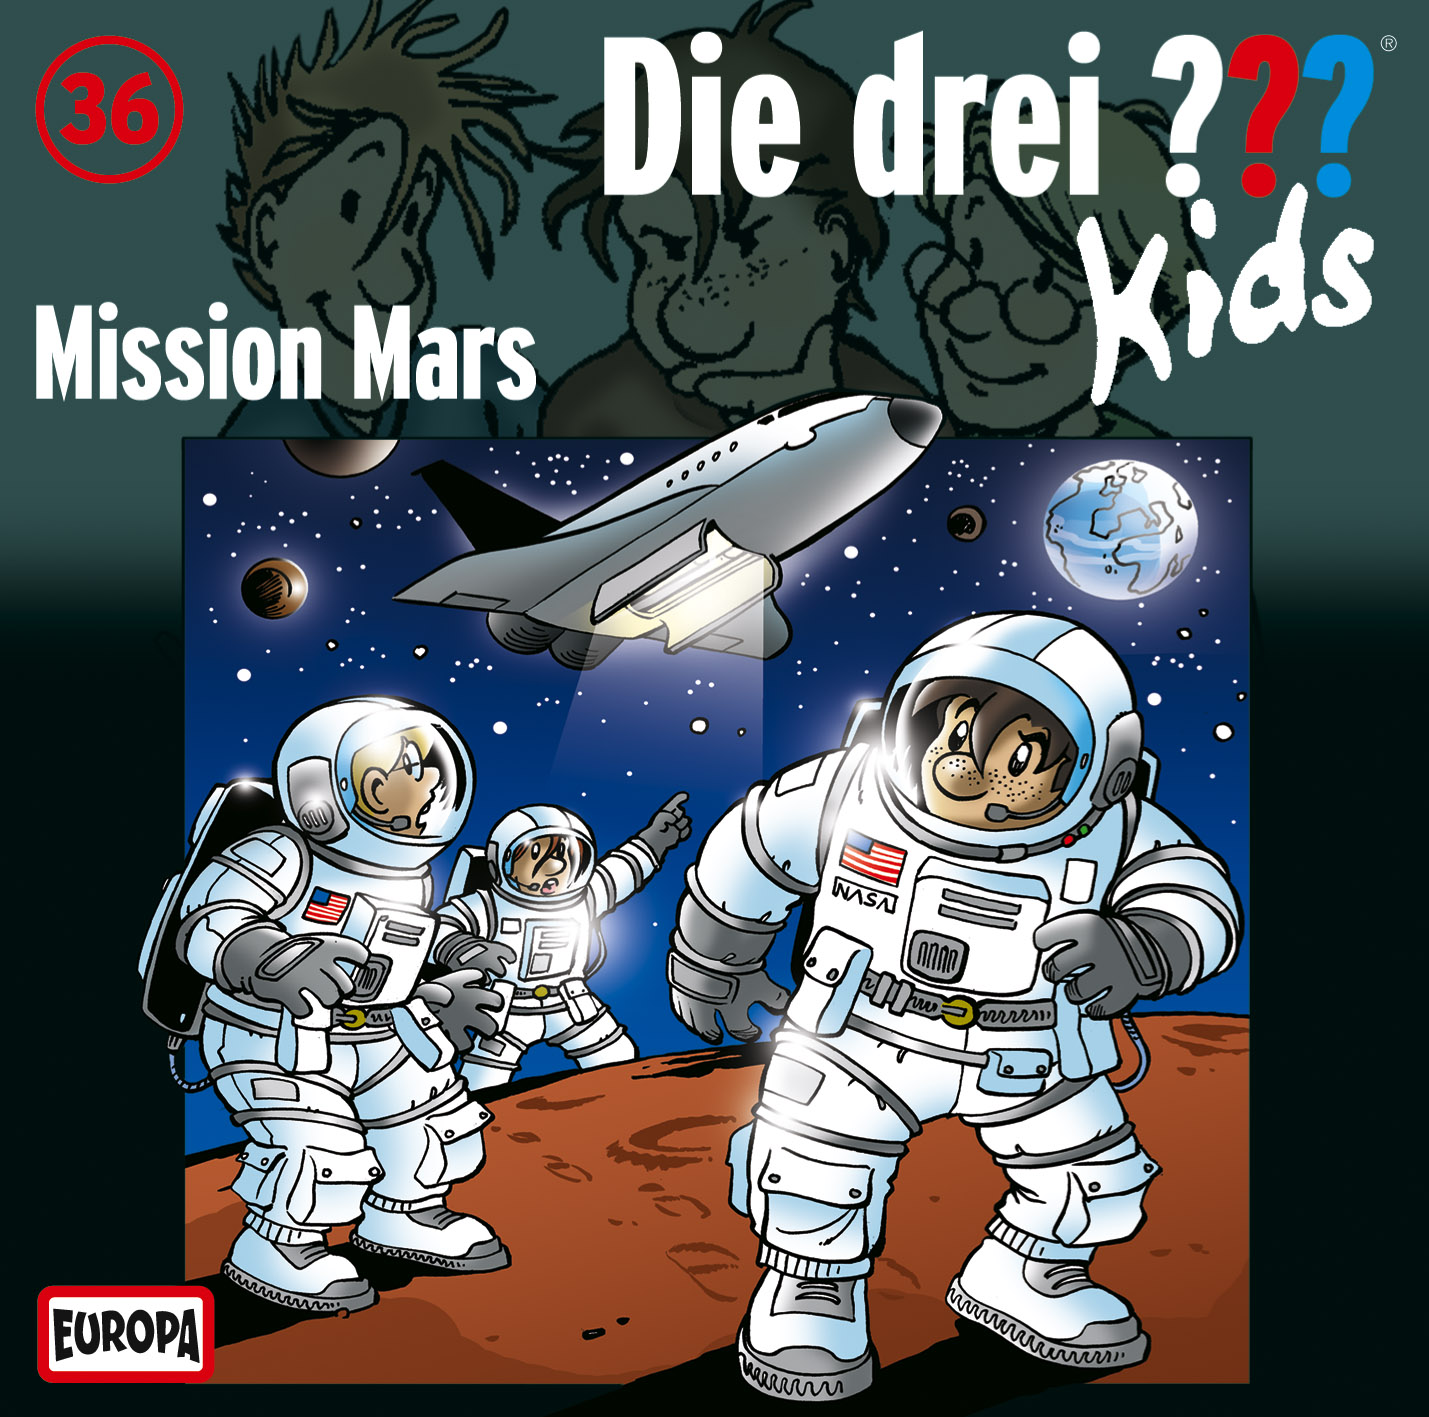 Die drei ??? Kids - Mission Mars